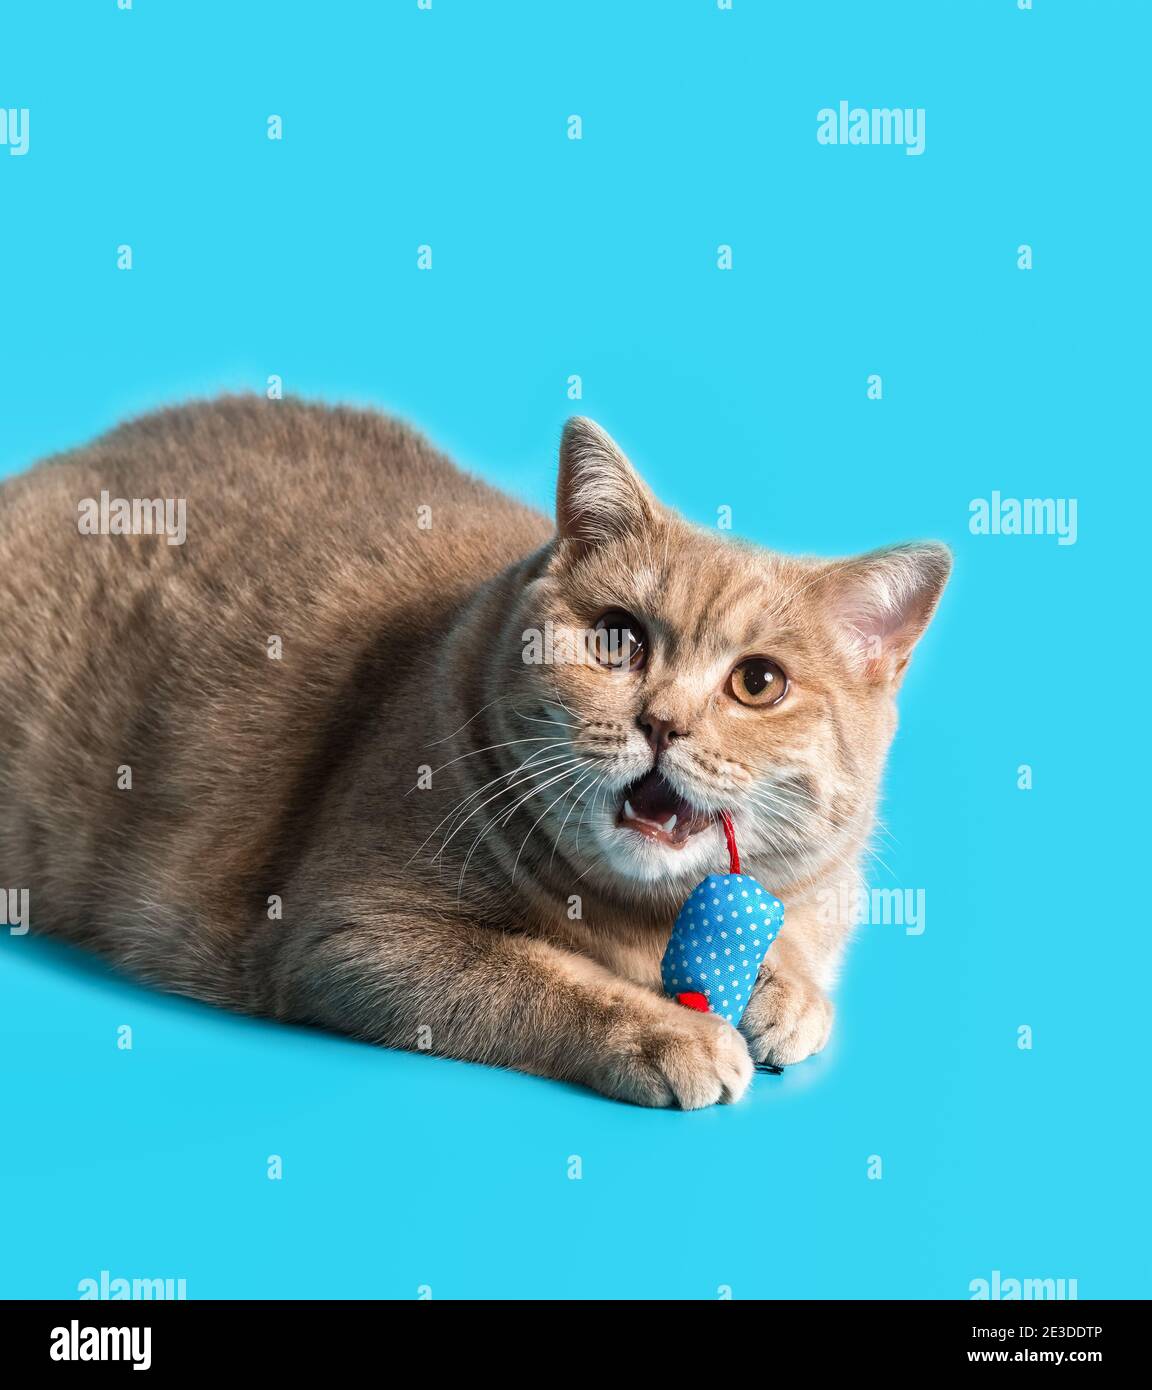 un chat de shorthair britannique de couleur pêche tient un jouet de souris de chiffon bleu dans ses pattes et grignoter sur une queue rouge. Les fangs blancs sont visibles Banque D'Images